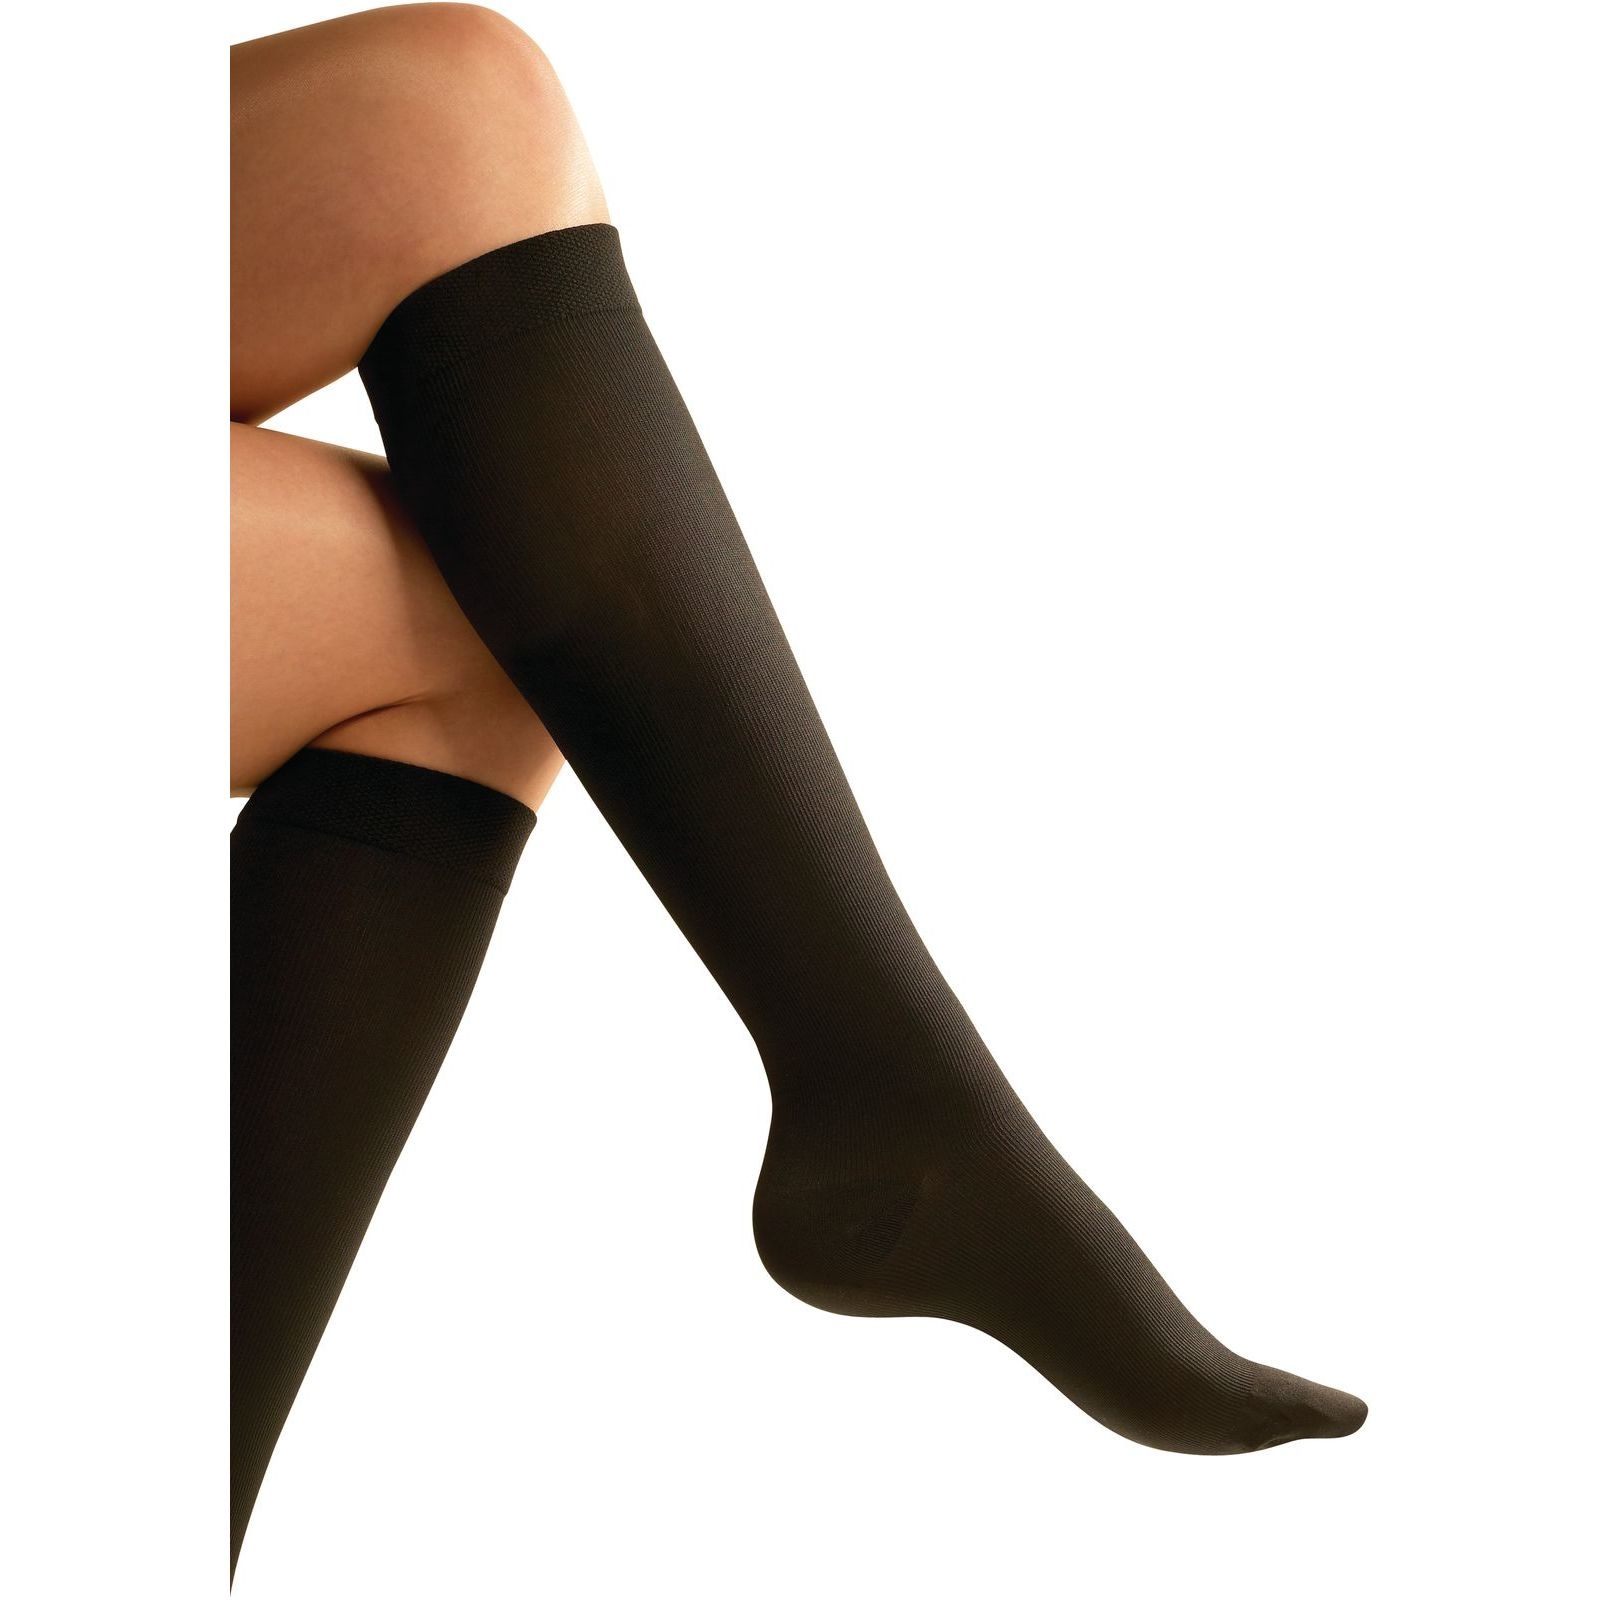 6 Pack Deal, DVT Deep Vein Thrombosis stocking flight socks size large